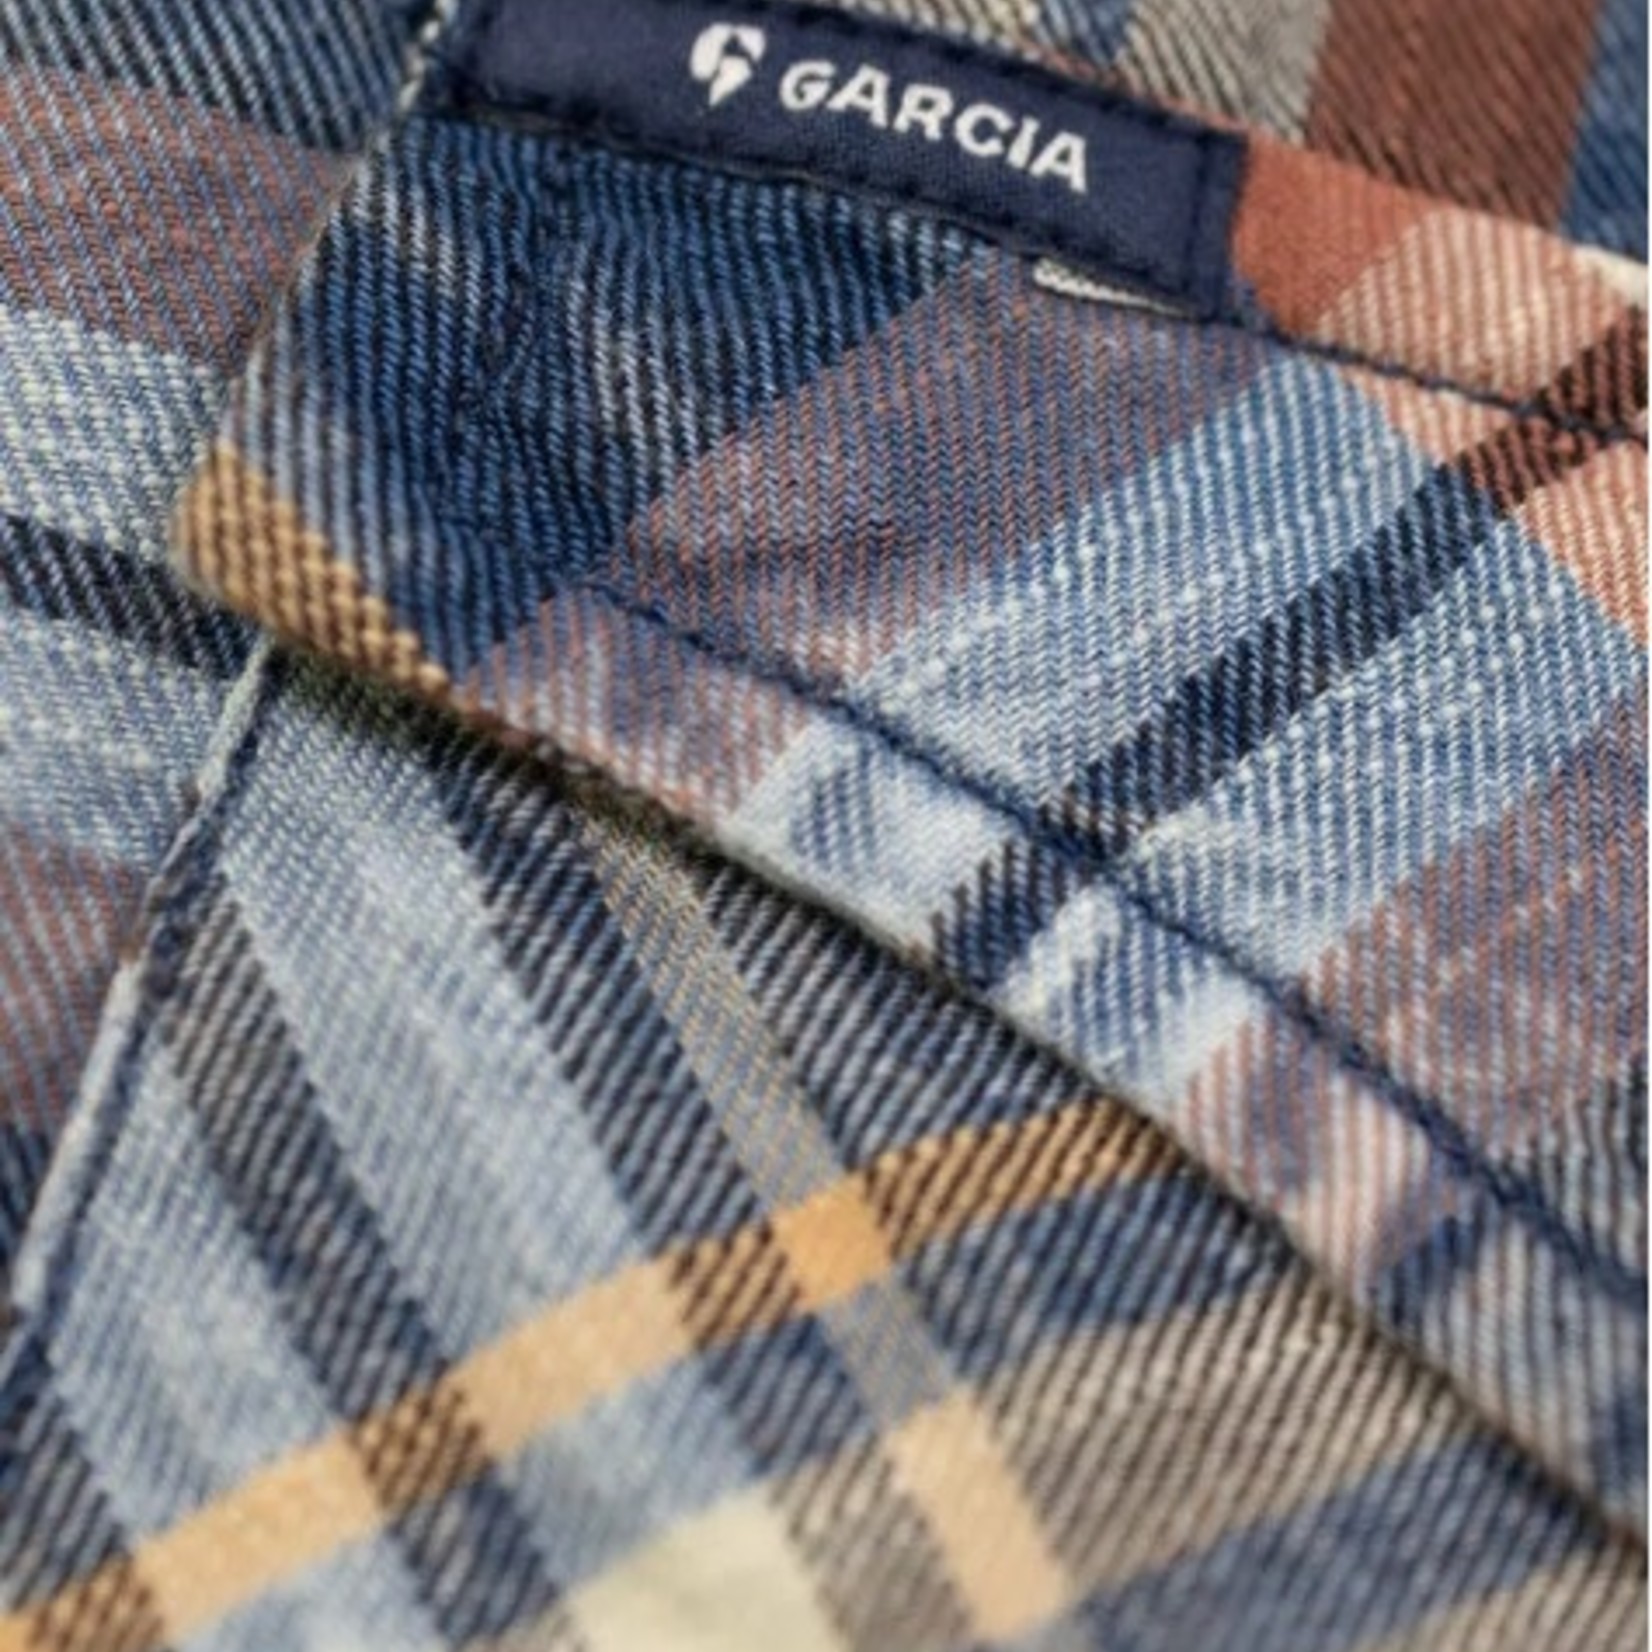 Garcia Garcia 100% Cotton Checked Shirt